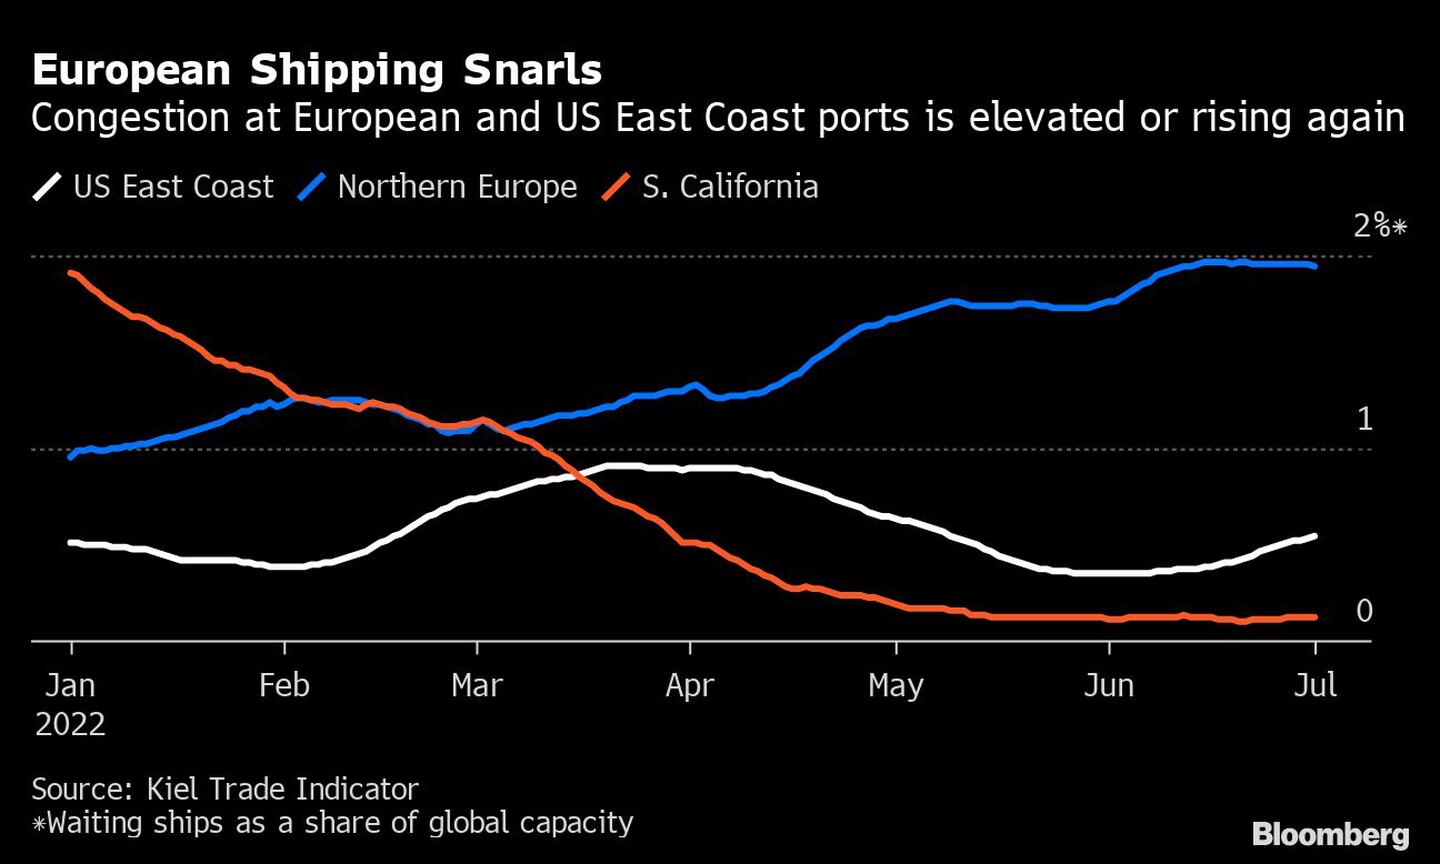 La congestión en los puertos europeos y de la costa este de EE.UU. es elevada o vuelve a aumentar.dfd